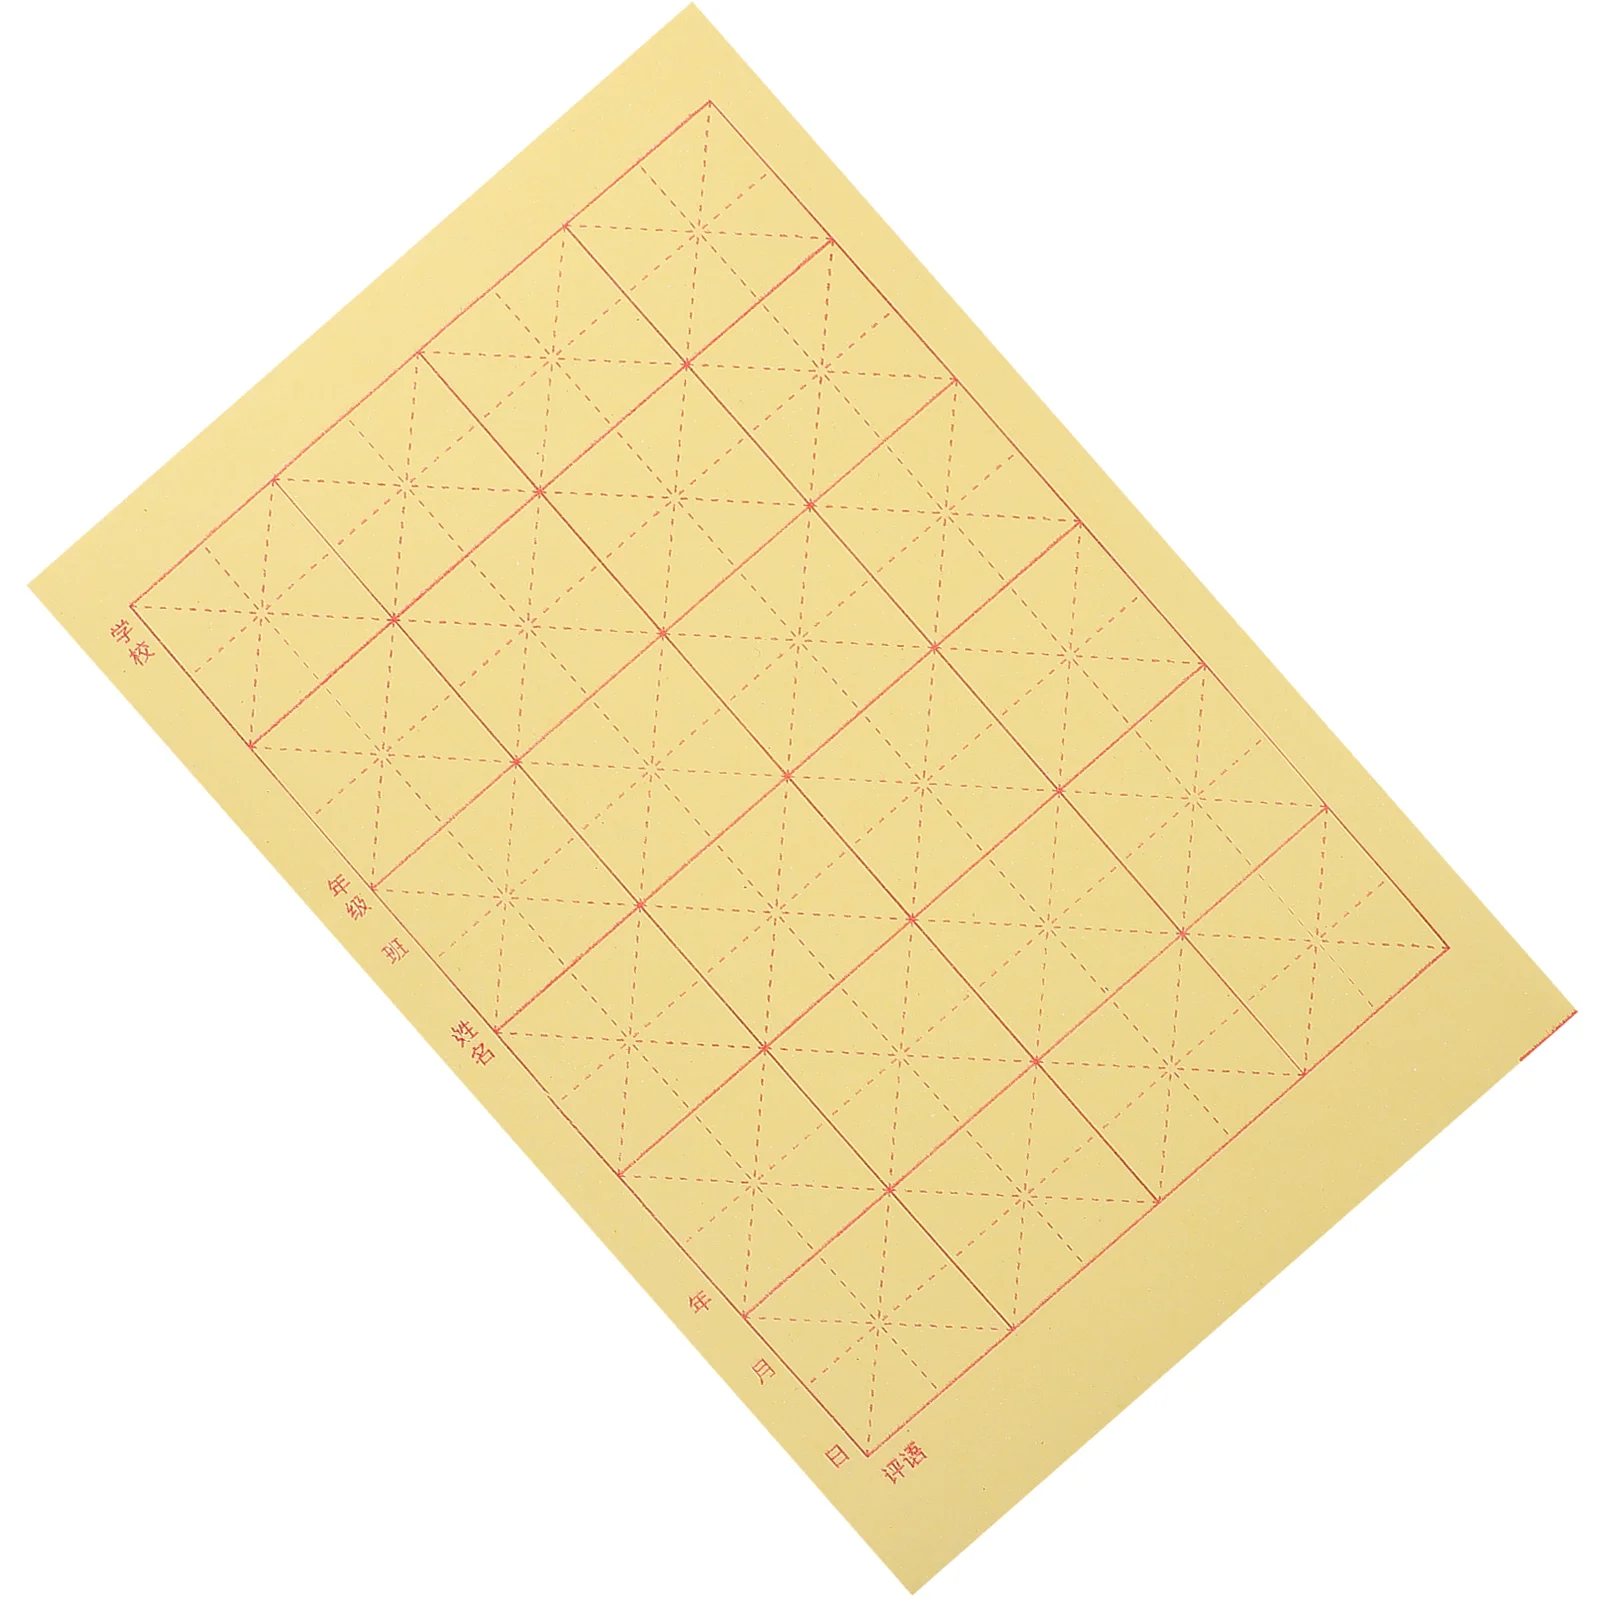 24 сетки Китайская бумага для каллиграфии, кисть, чернила, бумага Суми, бумага Сюань, рисовая бумага для начинающих любителей каллиграфии Изображение 3